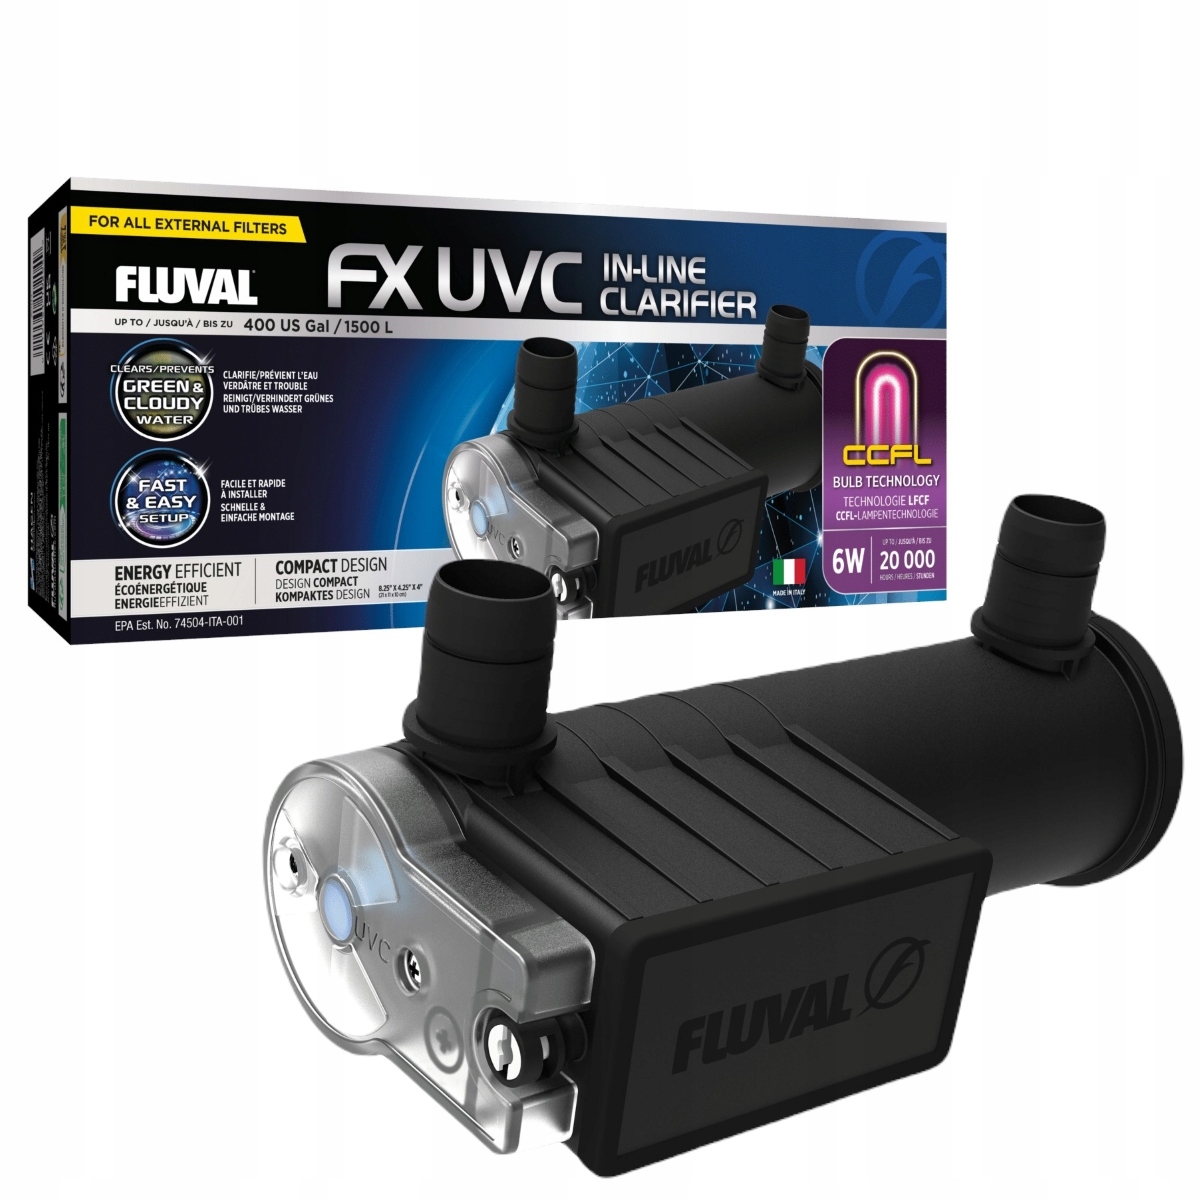 Fluval Fx Uvc In-Line Clarifier Uv-c sterilizační lampa pro akvárium 1500L